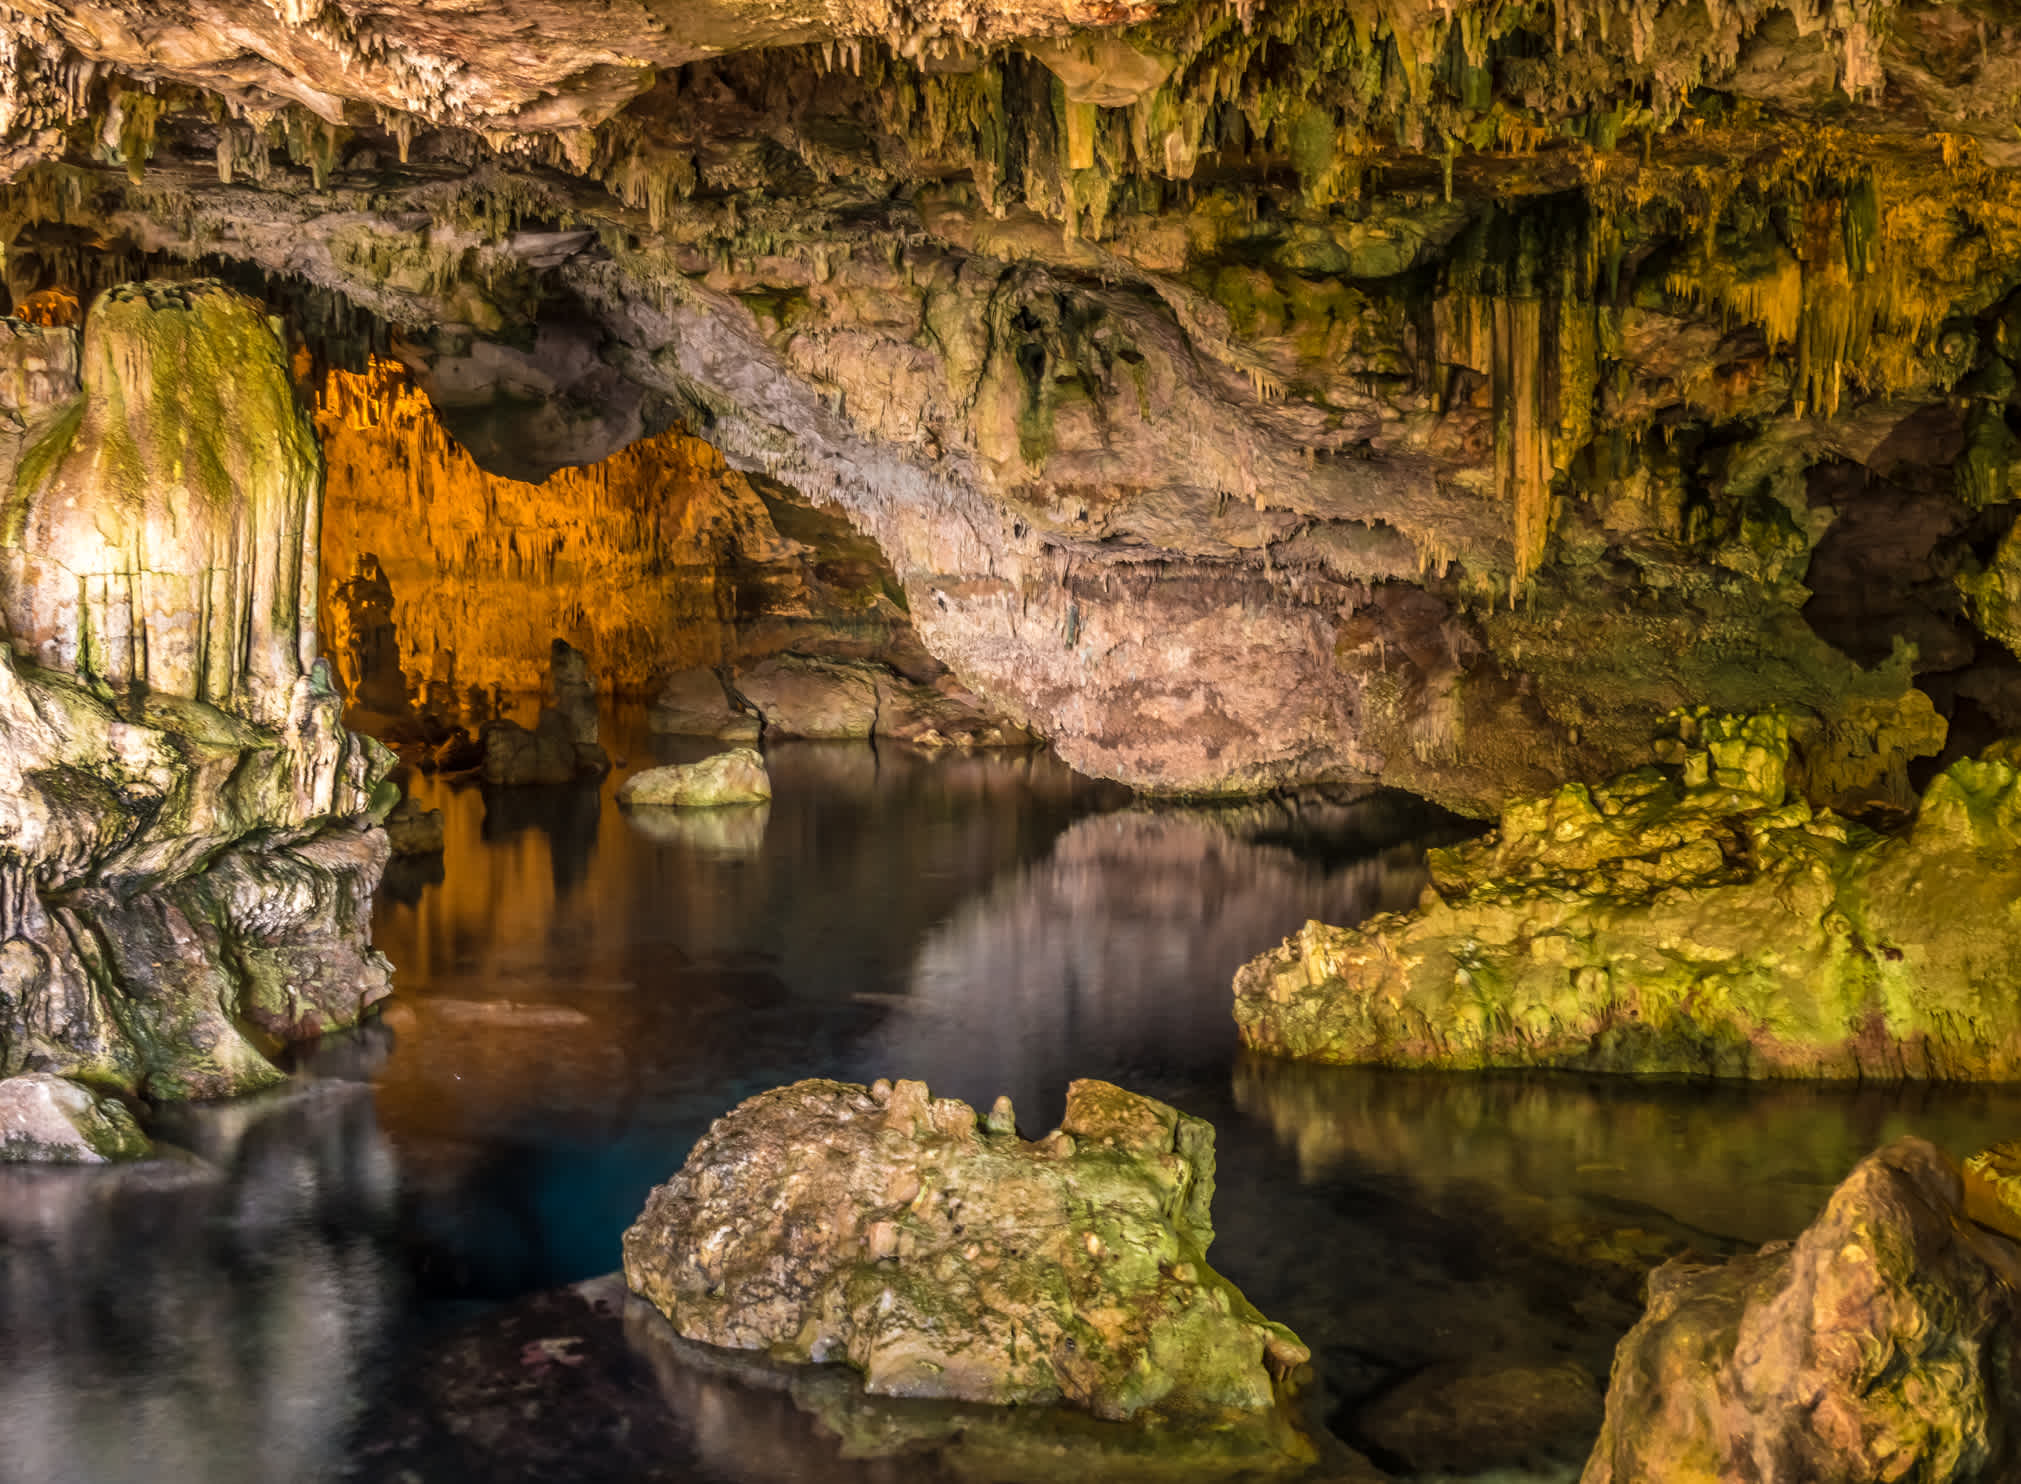 La grotte de Neptune, une grotte de stalactites près d'Alghero, en Sardaigne, en Italie.